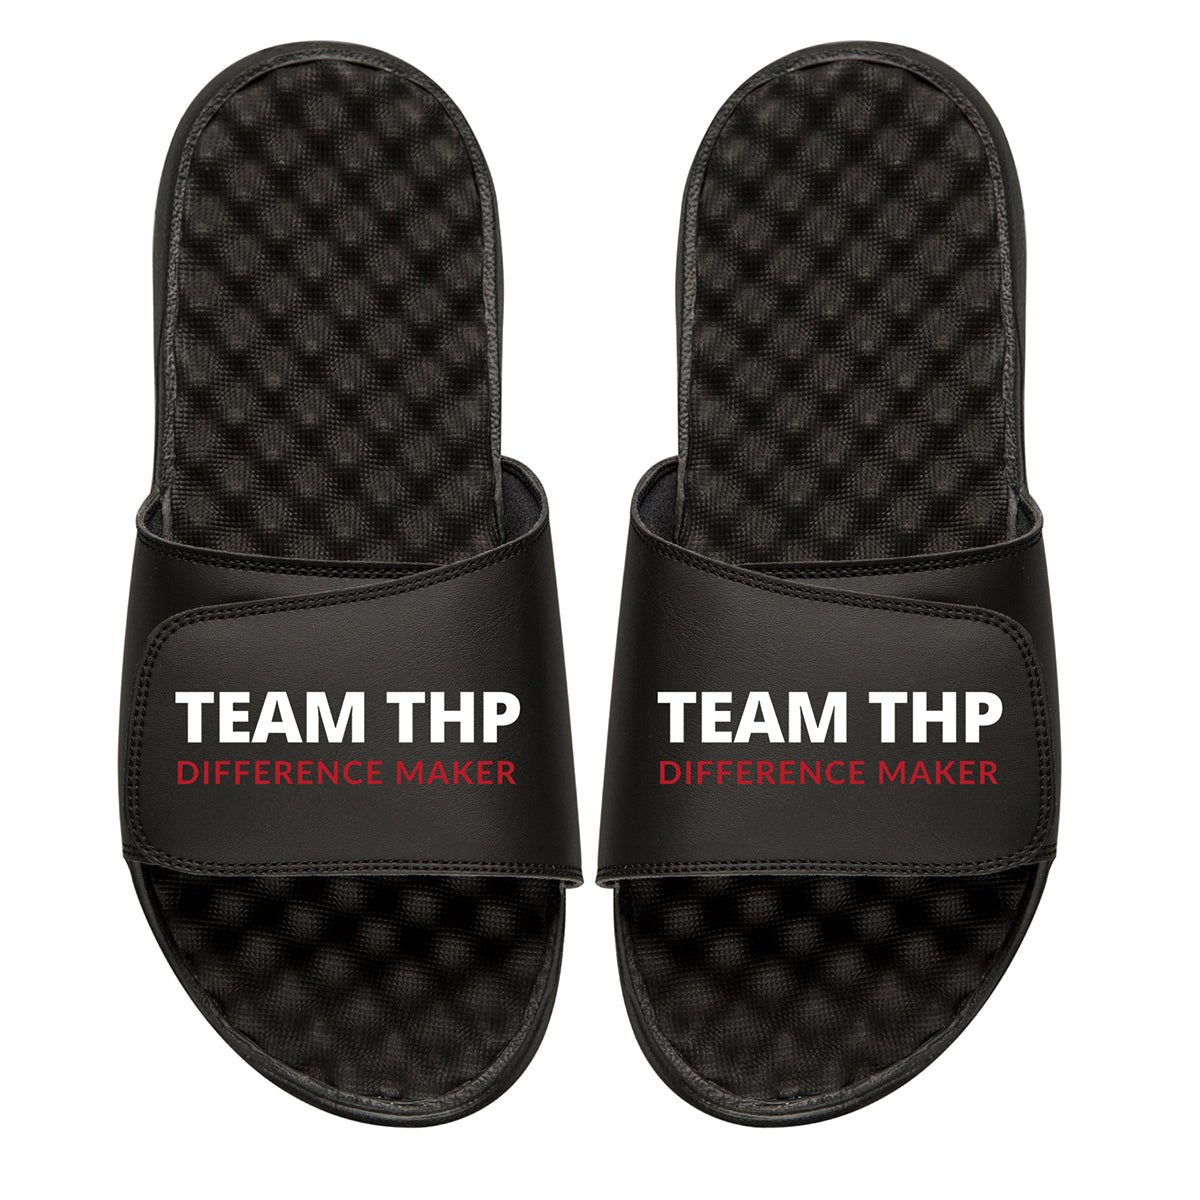 Chris Herren Team THP Slides